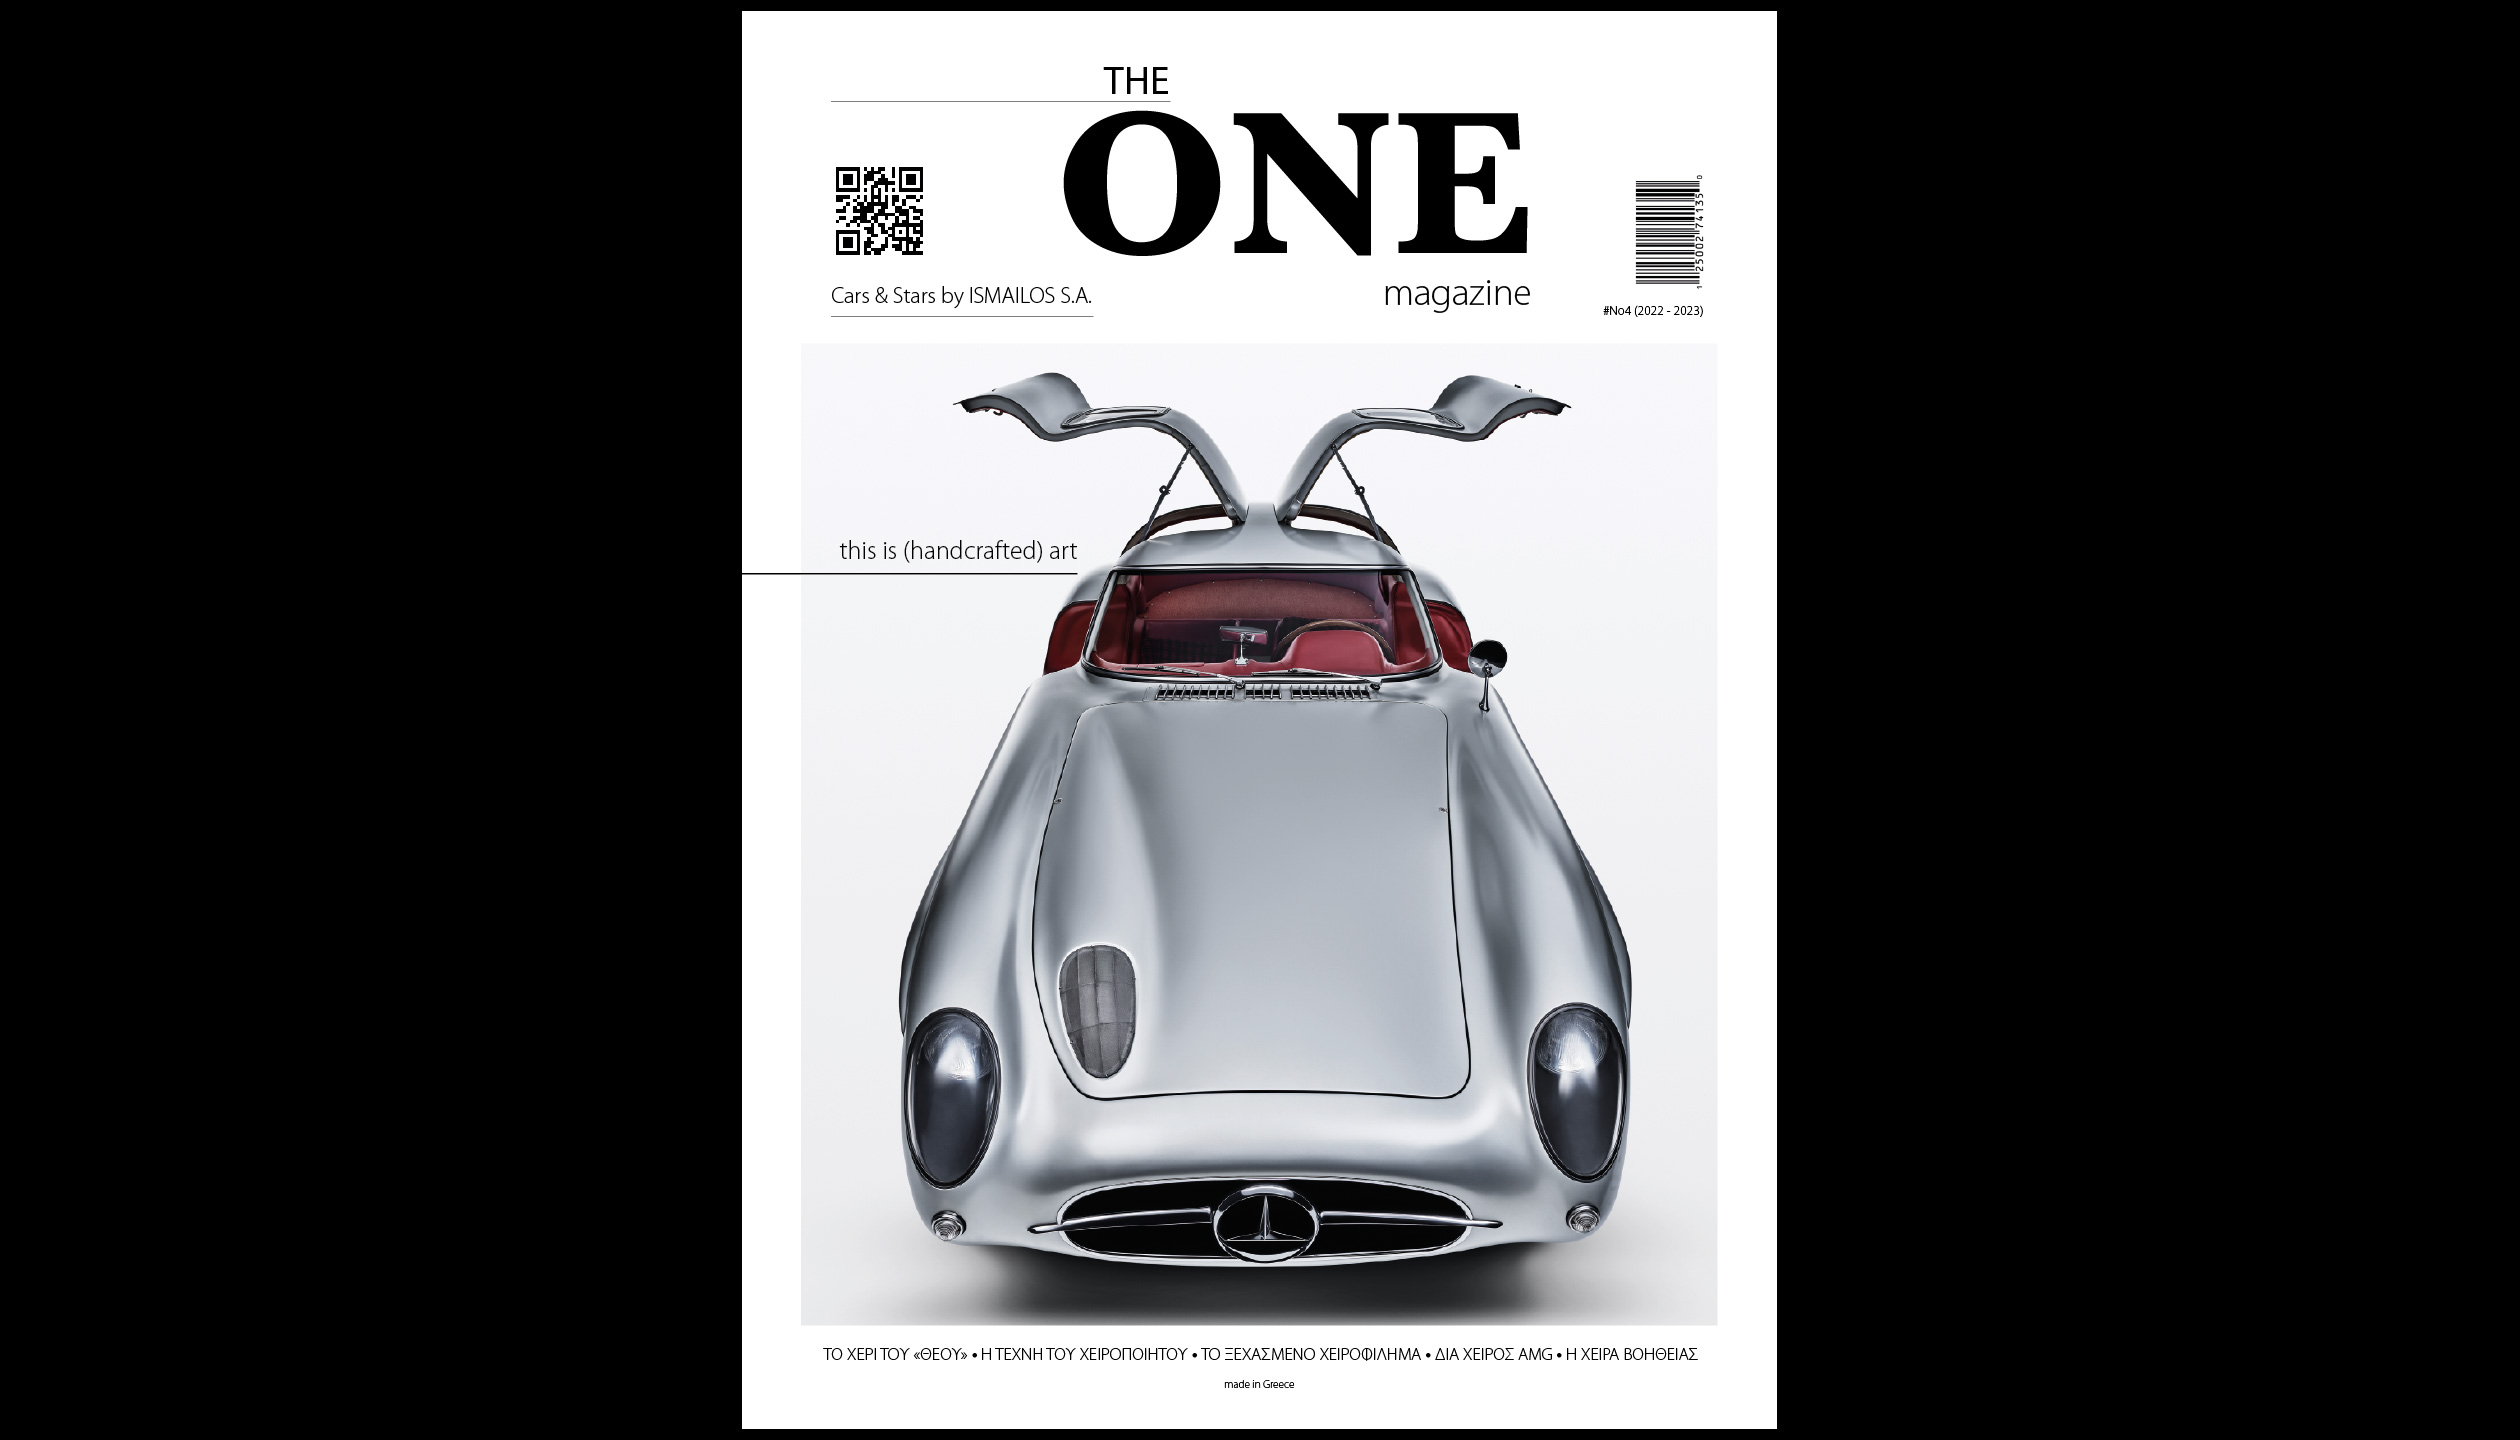 Ξεφυλλίστε δωρεάν στην οθόνη σας το νέο The ONE magazine